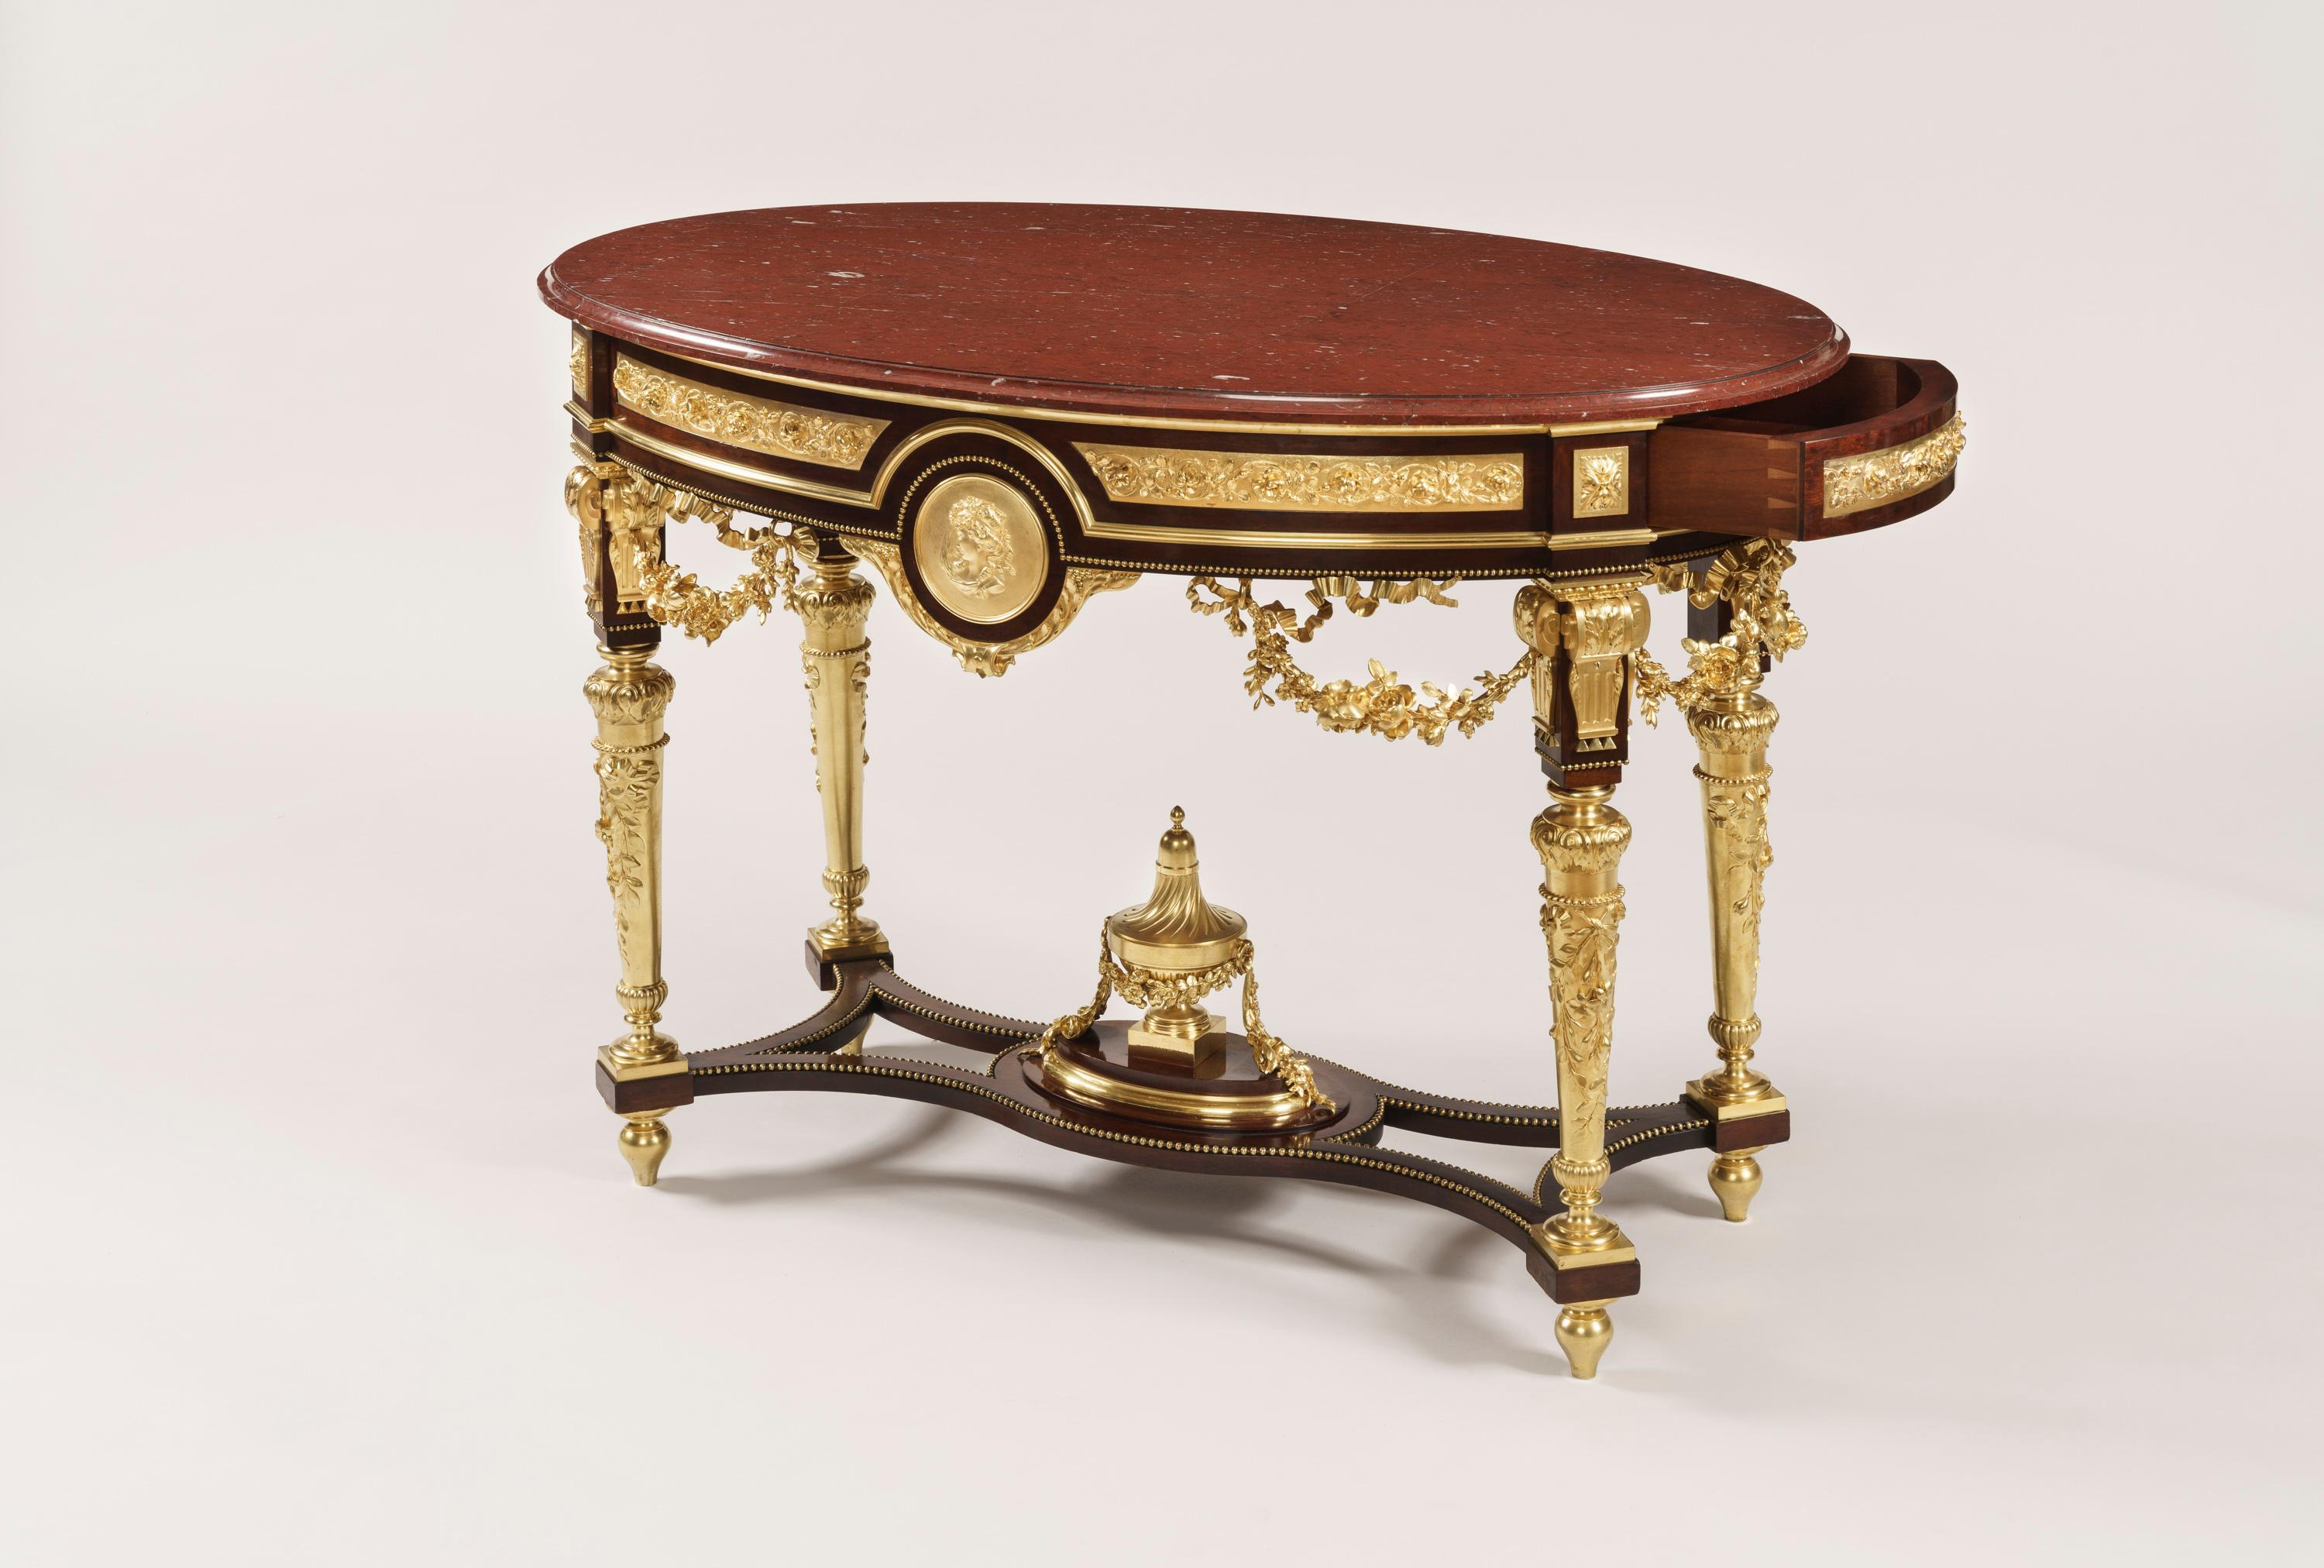 Une superbe table centrale de style Louis XVI.

De forme elliptique, le cadre en acajou est richement décoré de bronze doré finement coulé et ciselé, et présente une plate-forme pyrénéenne Griotte à bord mouluré en ongle de pouce ; il s'élève sur